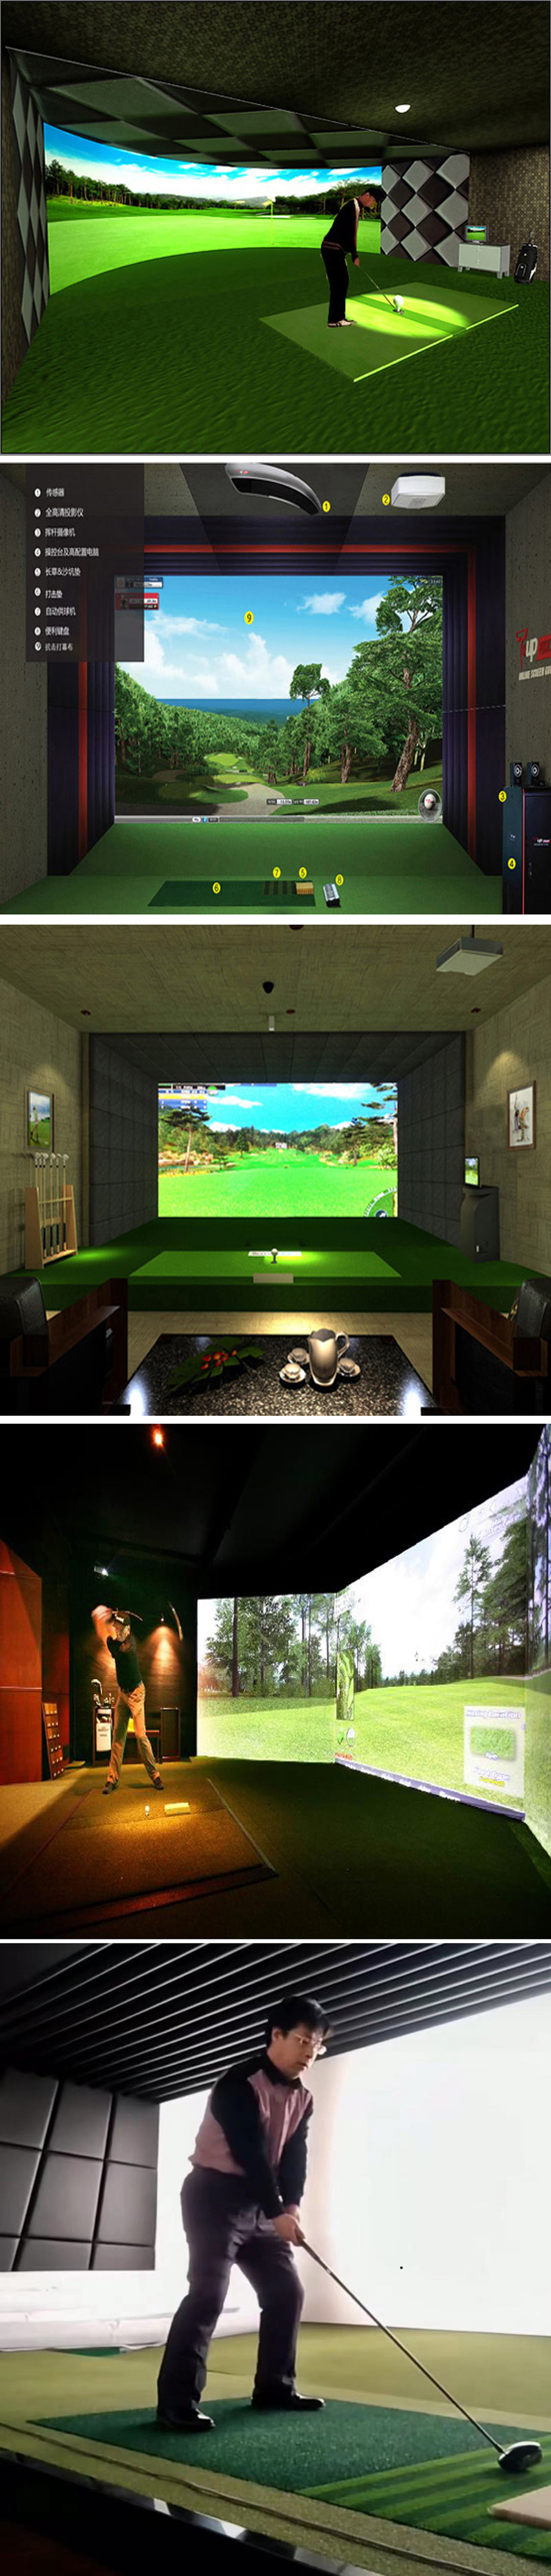 高尔夫模拟系统球场 一.jpg